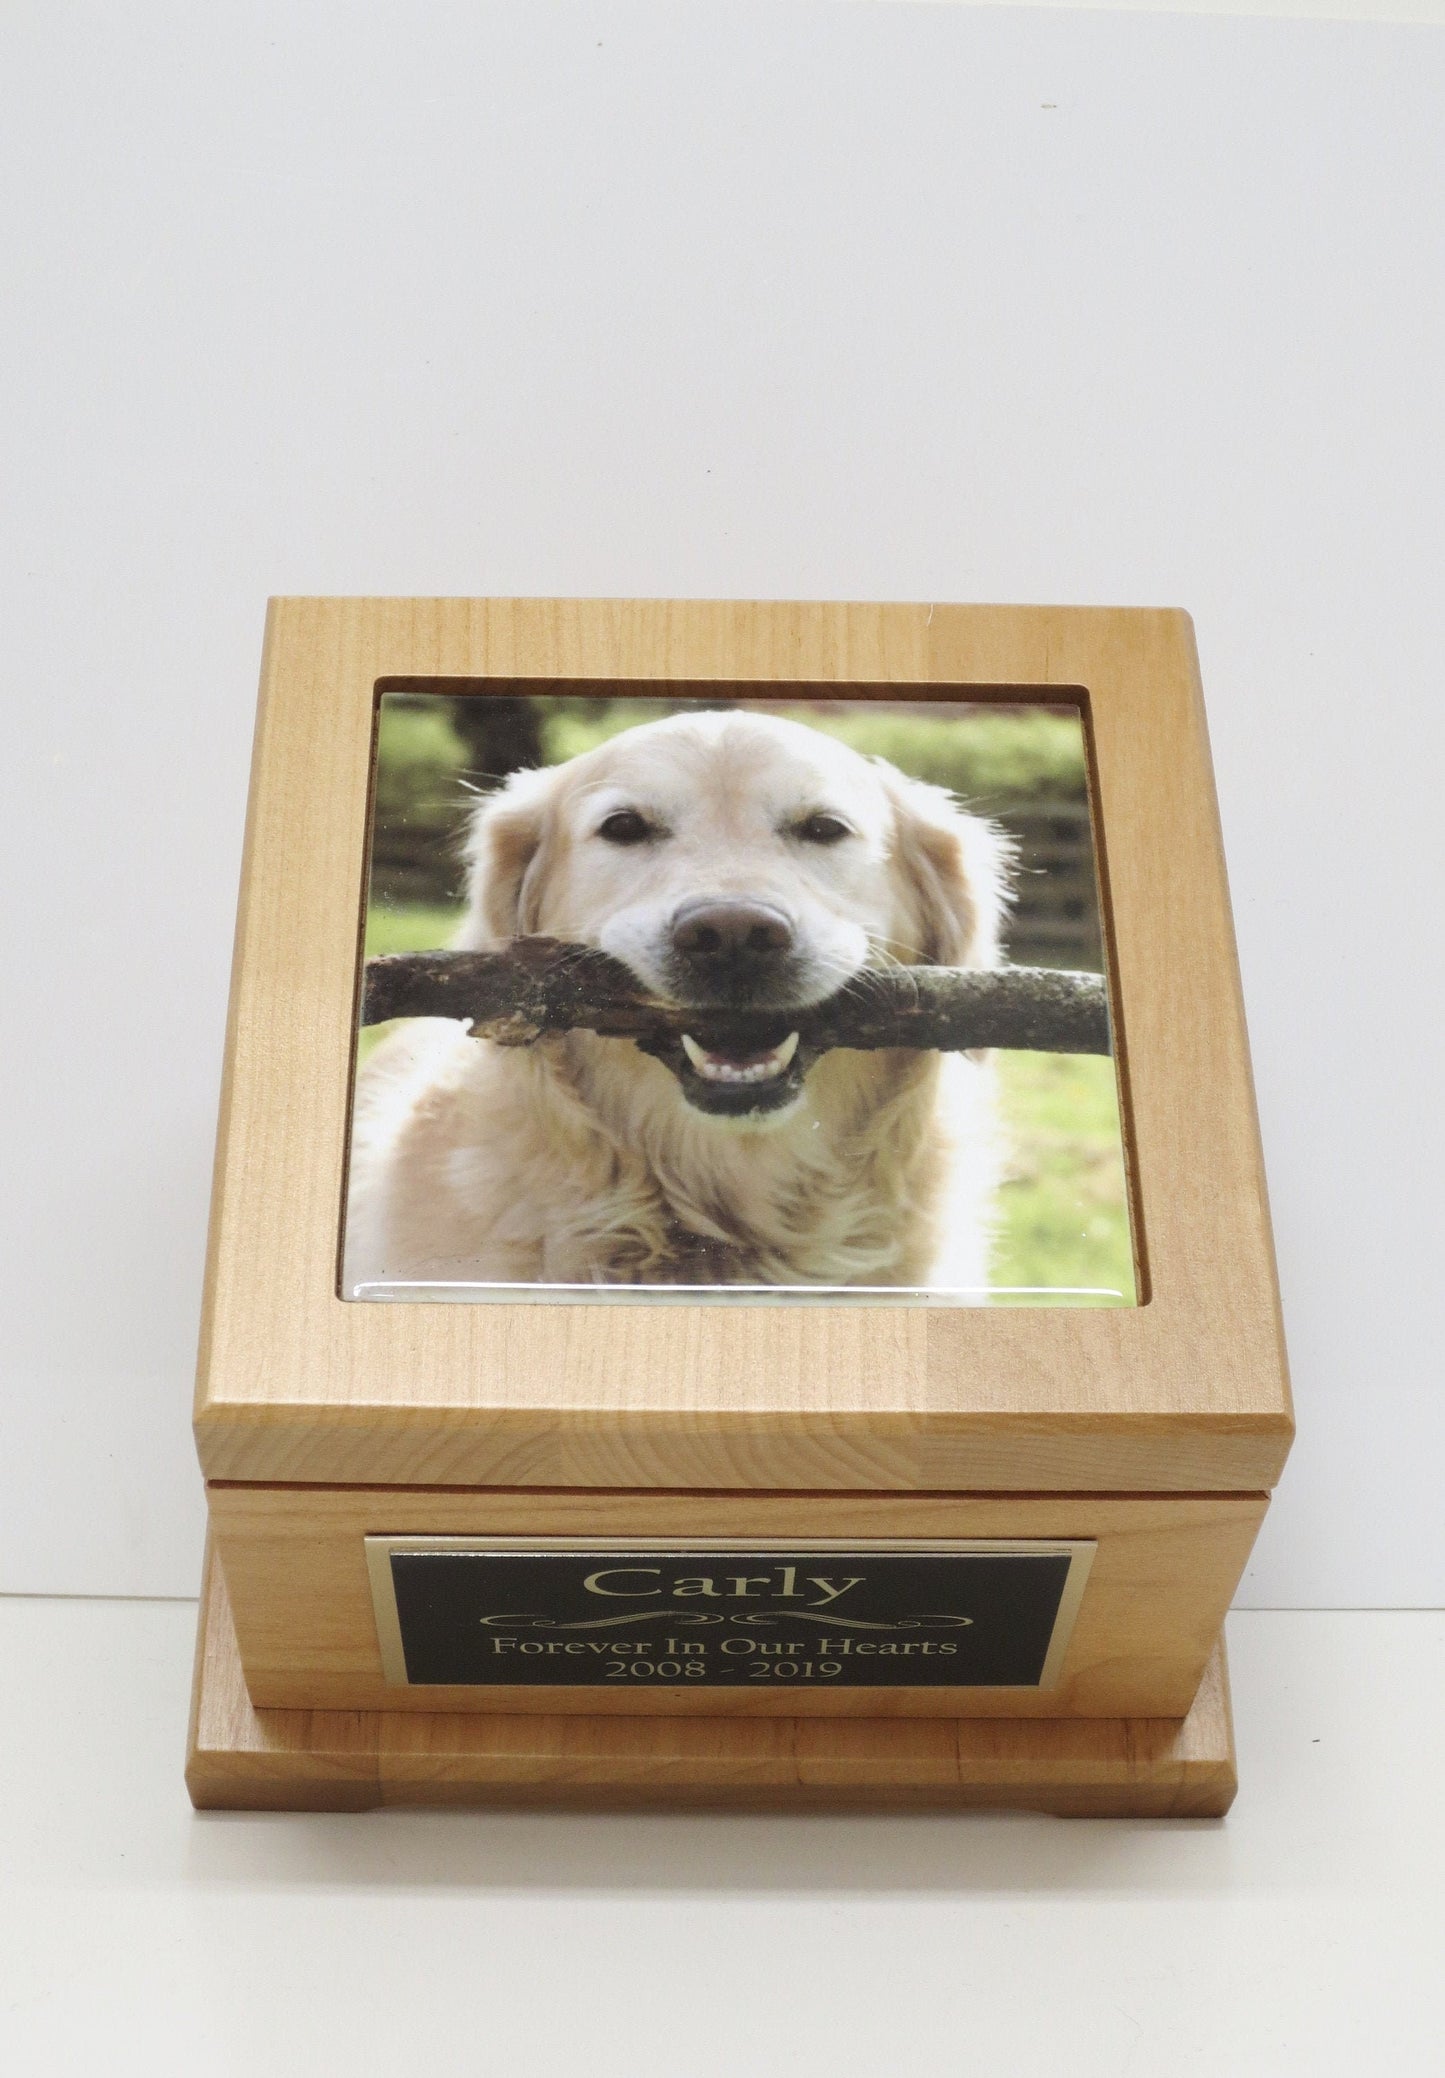 Pet Urn Dog Urn Pet Memorial Keepsake Cremation Urn Custom Photo Tile & Personalized Engraved Tag Red Alder Medium to Large Dog UpTo 60lb